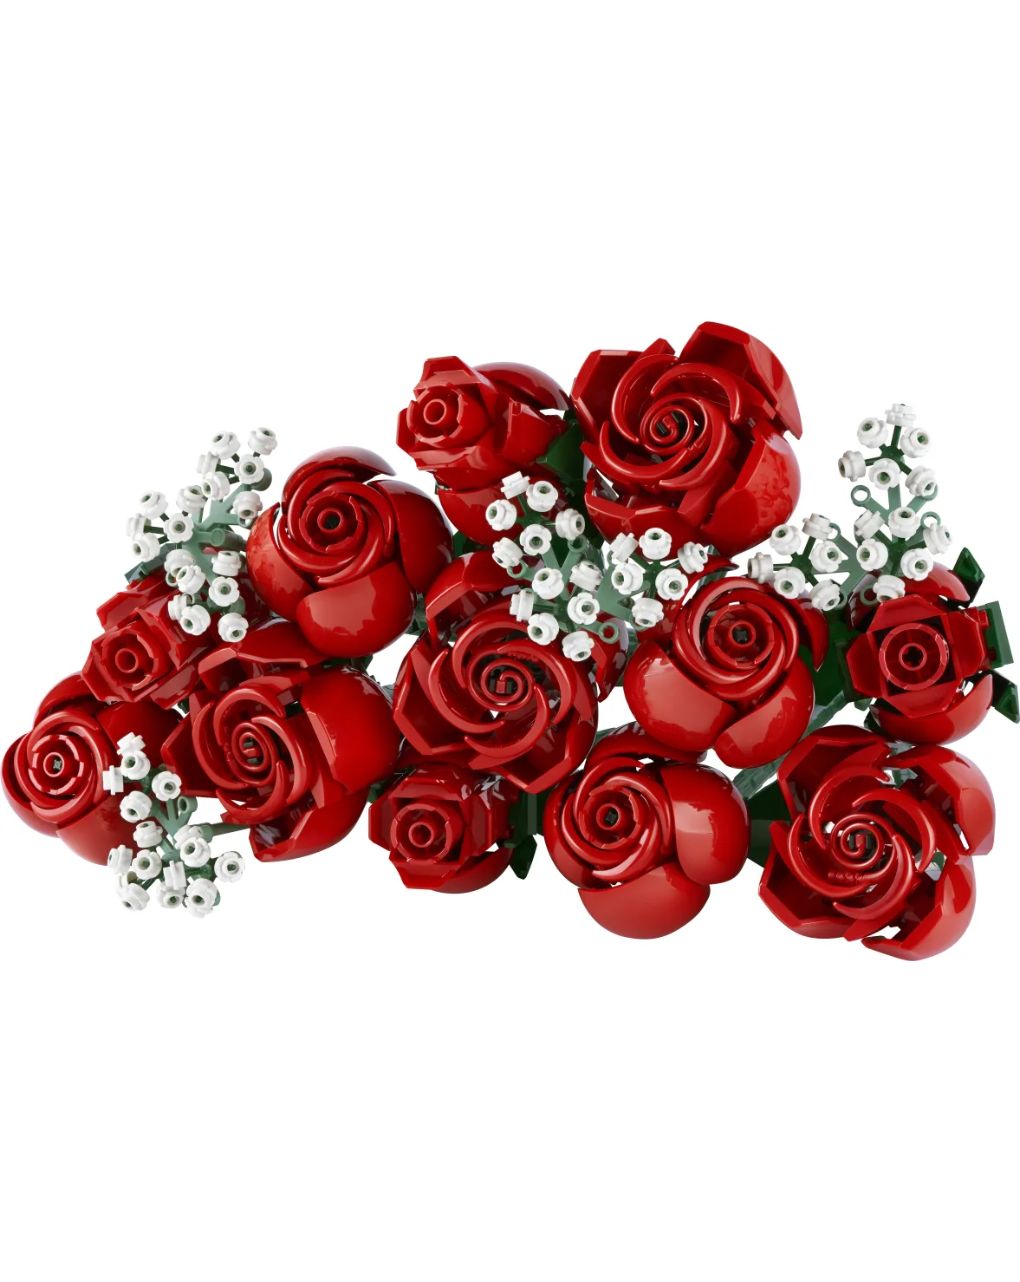 Lego icons botanical bouquet of roses 10328 - LEGO ICONS